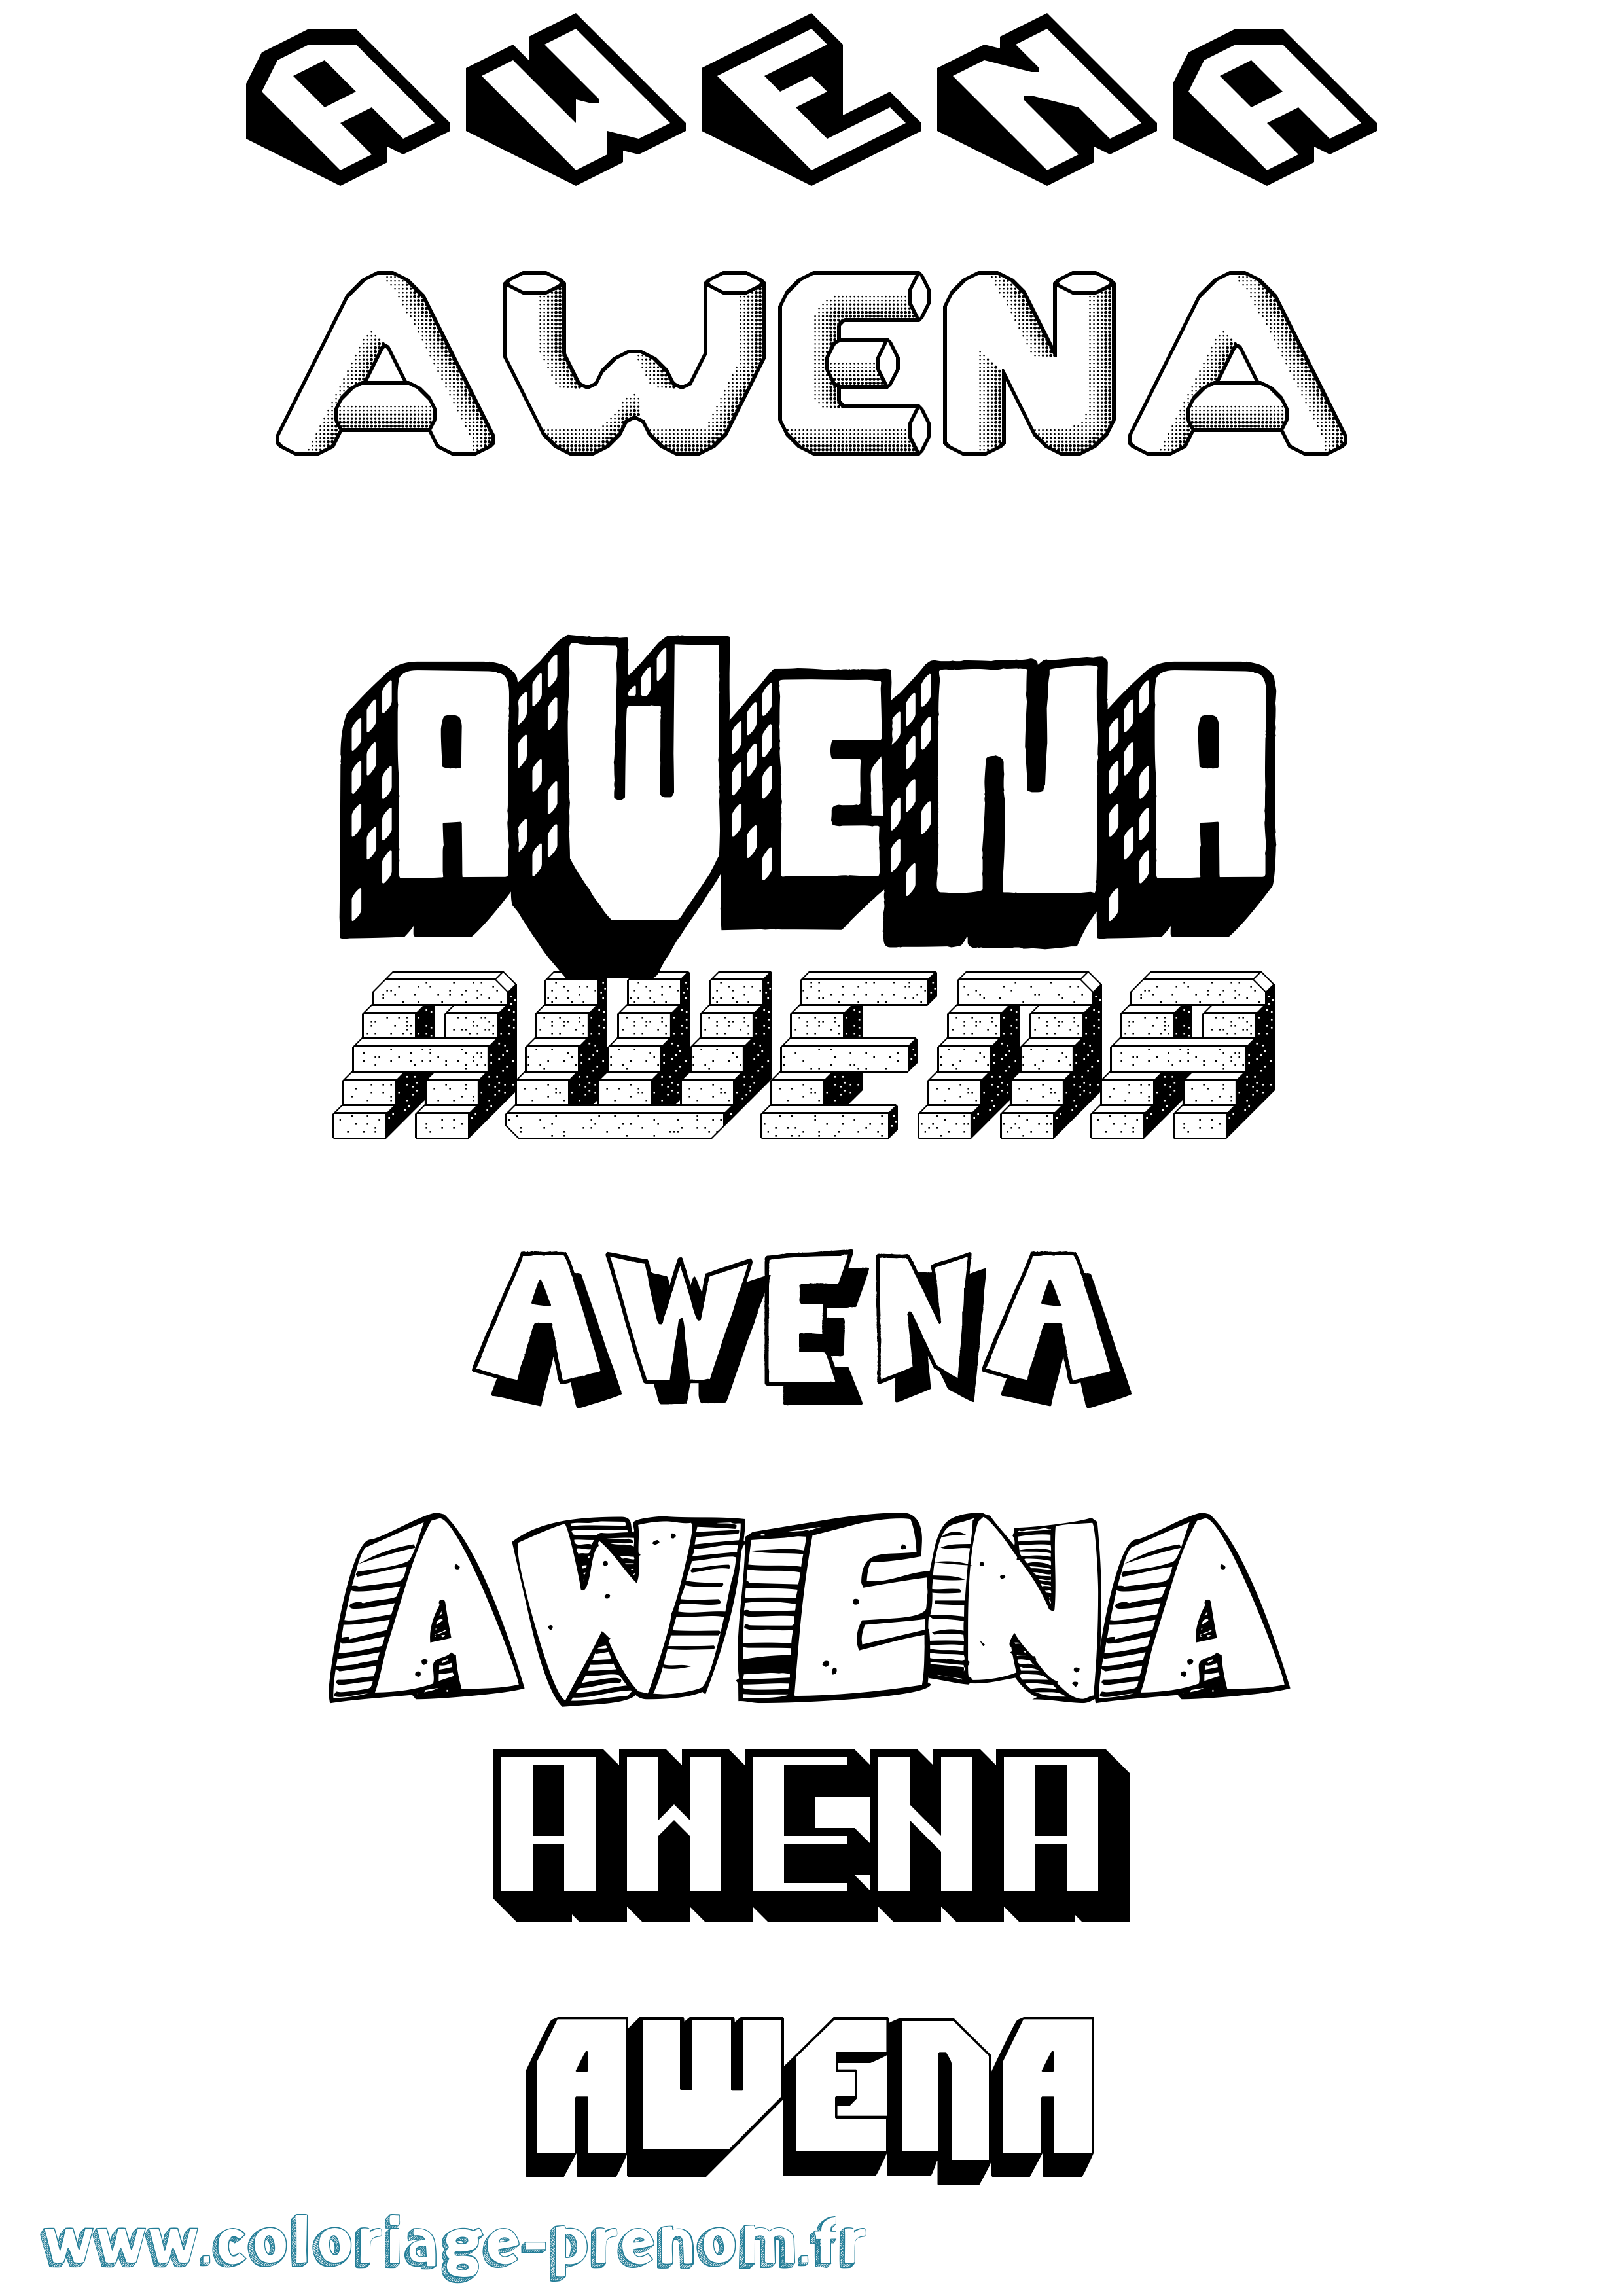 Coloriage prénom Awena Effet 3D